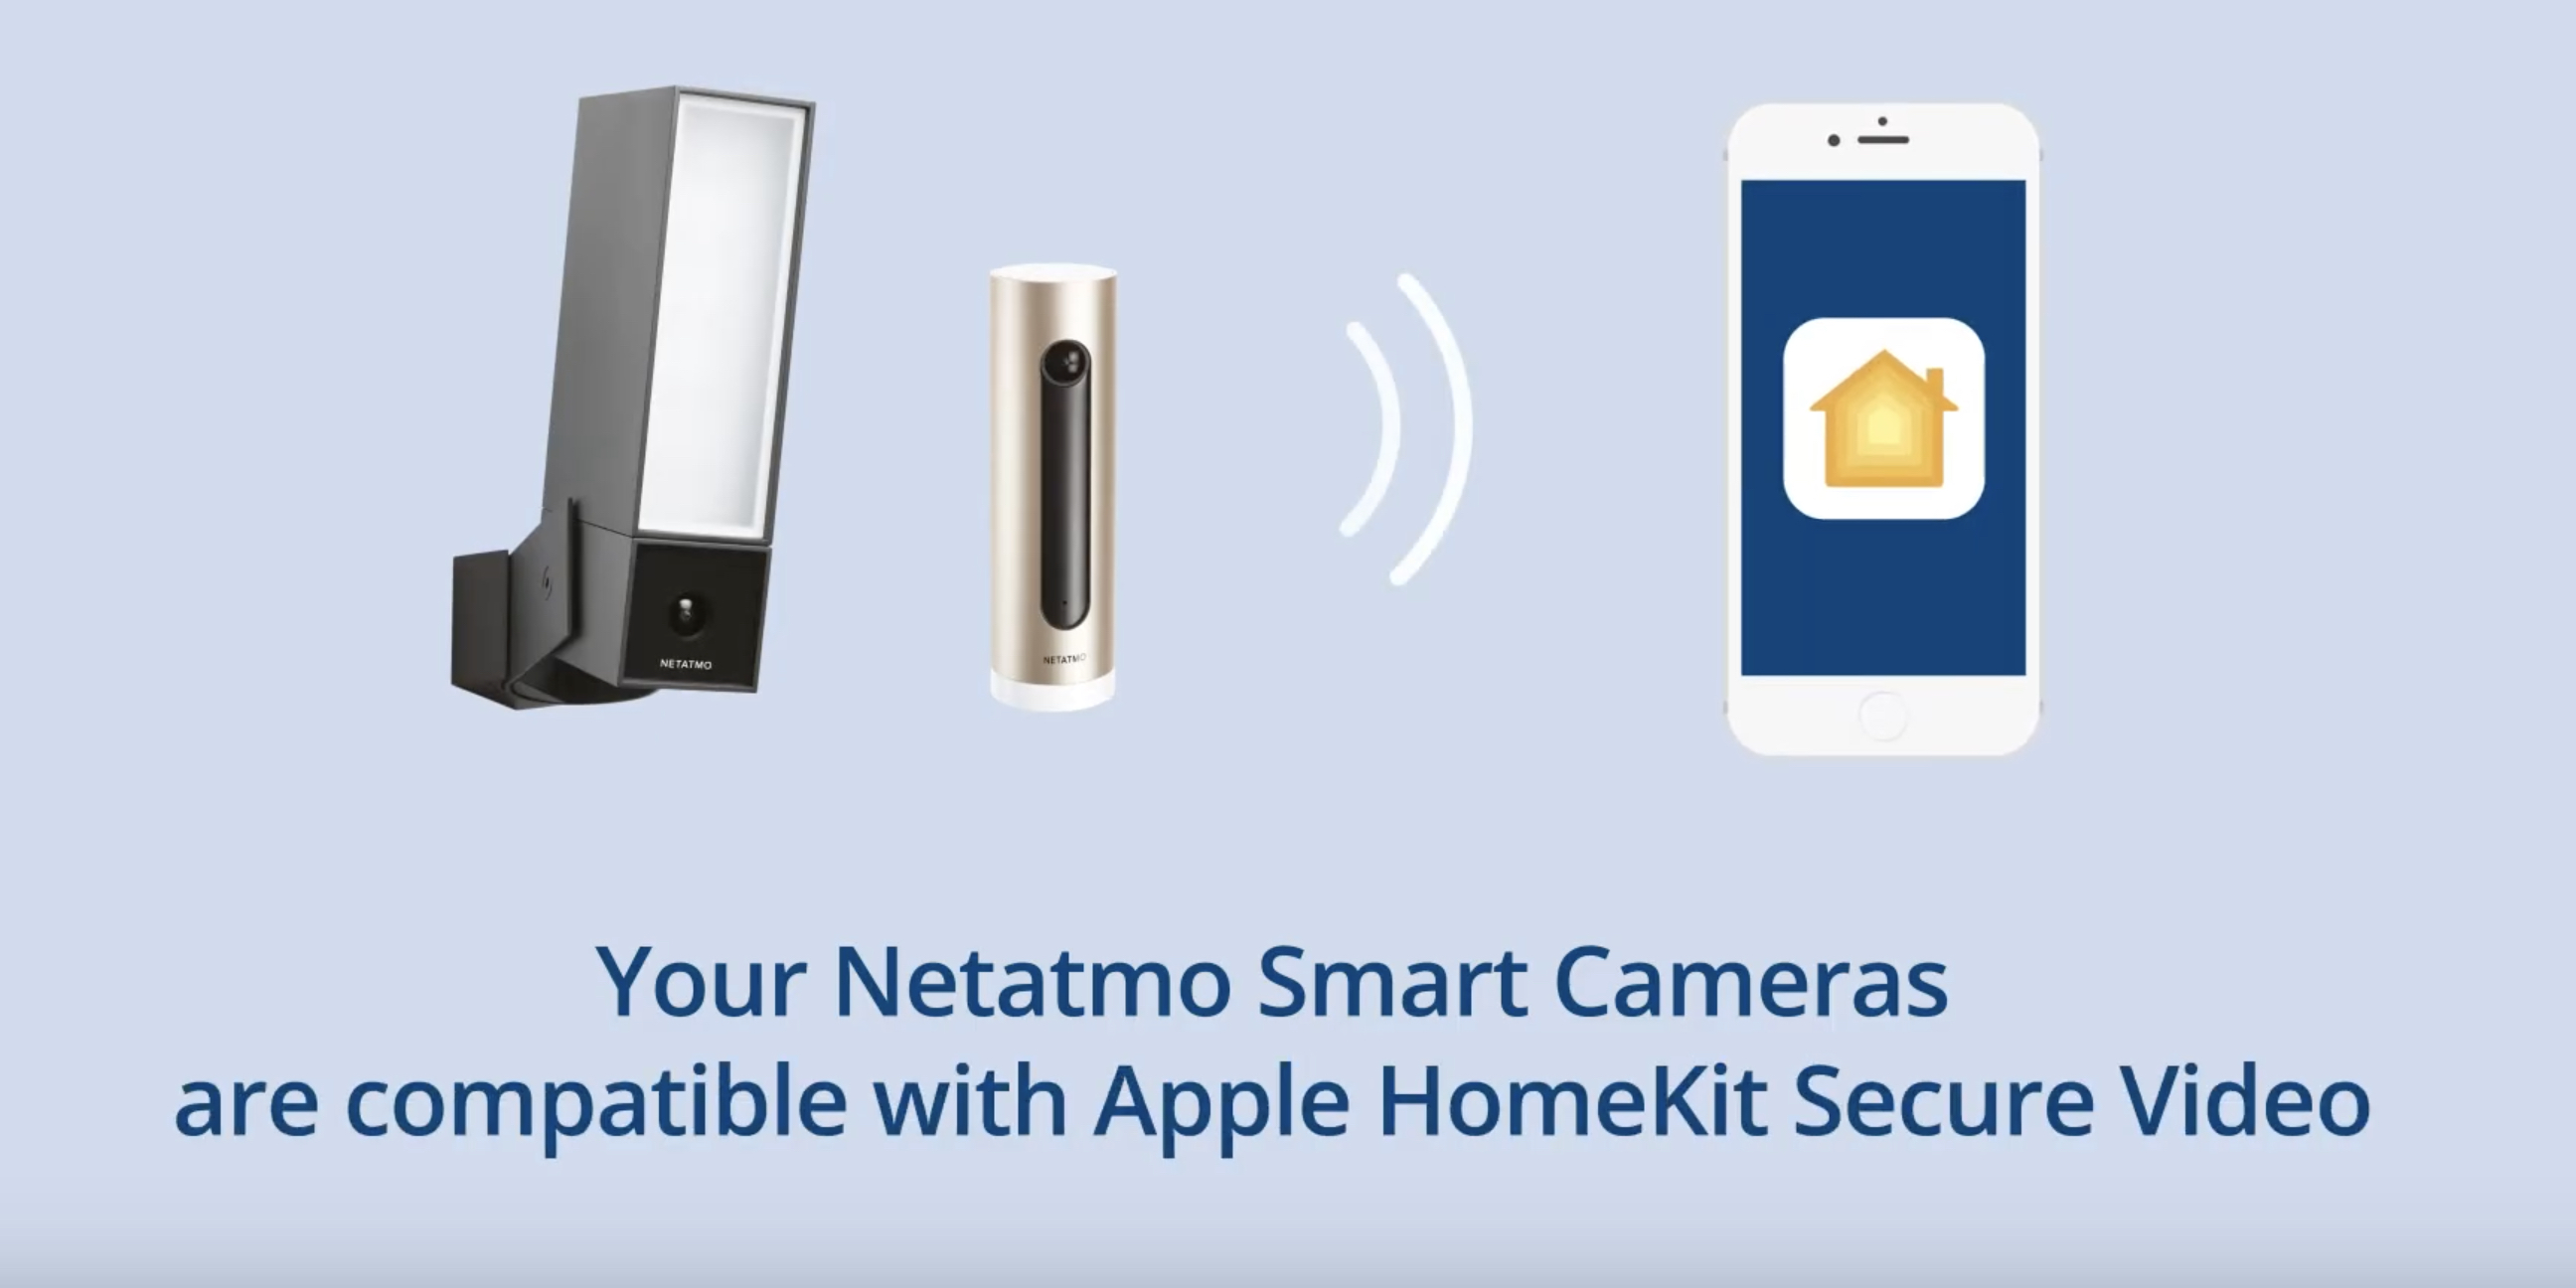 Netatmo adds support for HomeKitSecure Video in its Smart indoor